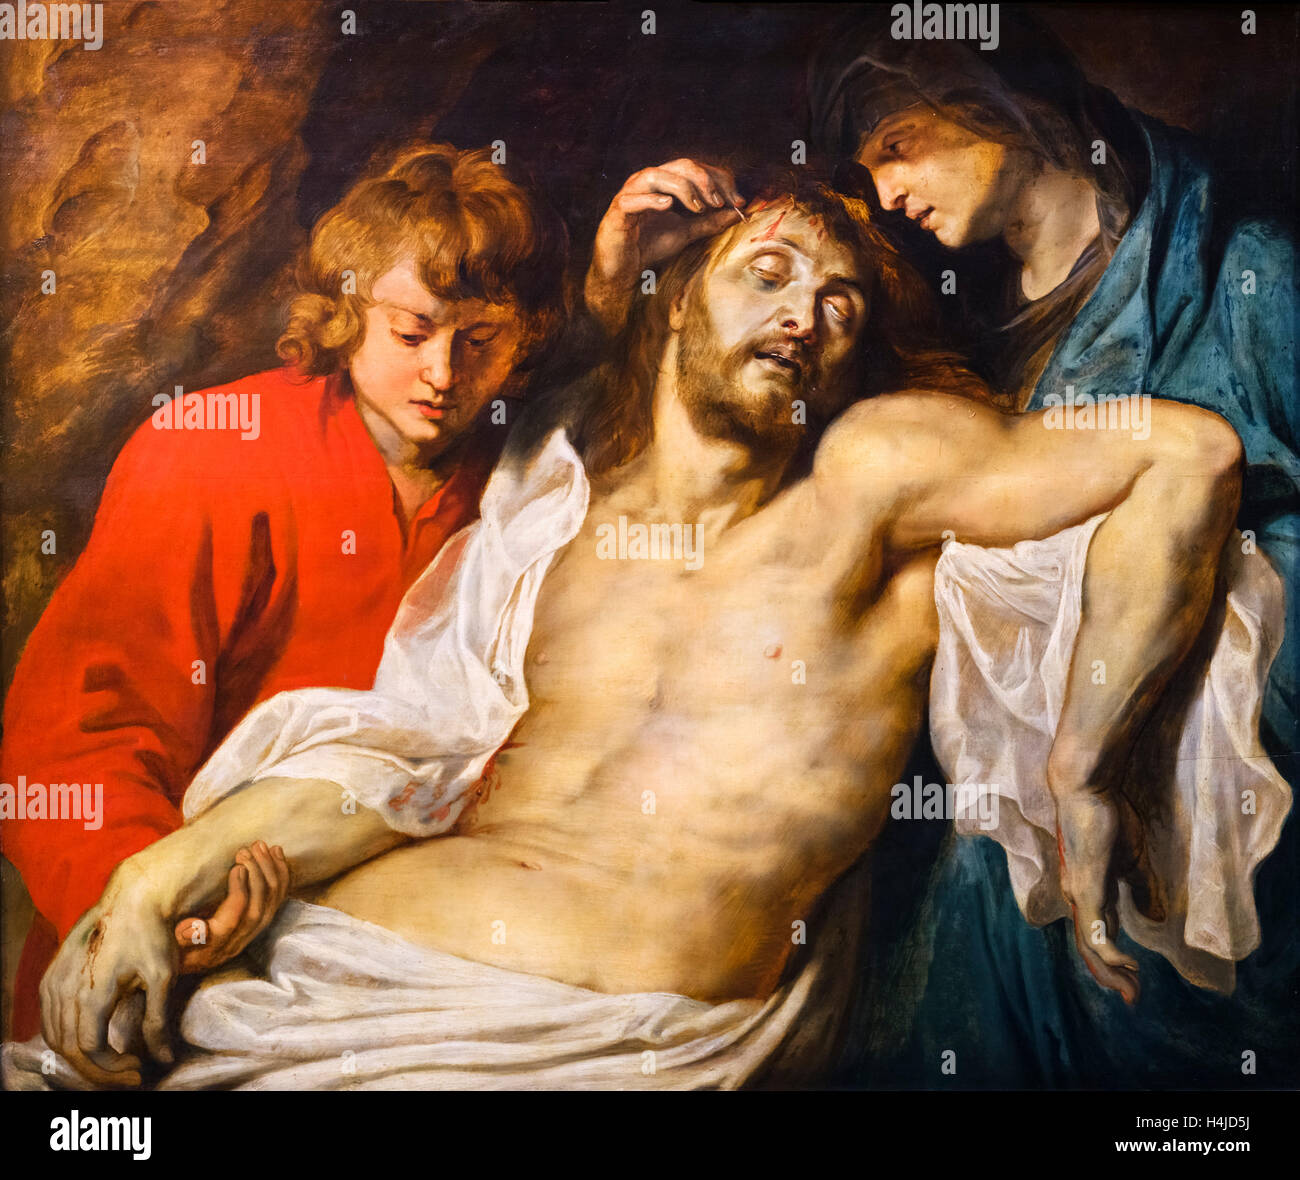 'La lamentation du Christ par la Vierge Marie et Jean' de Peter Paul Rubens (1577-1640), c.1614/15 Banque D'Images